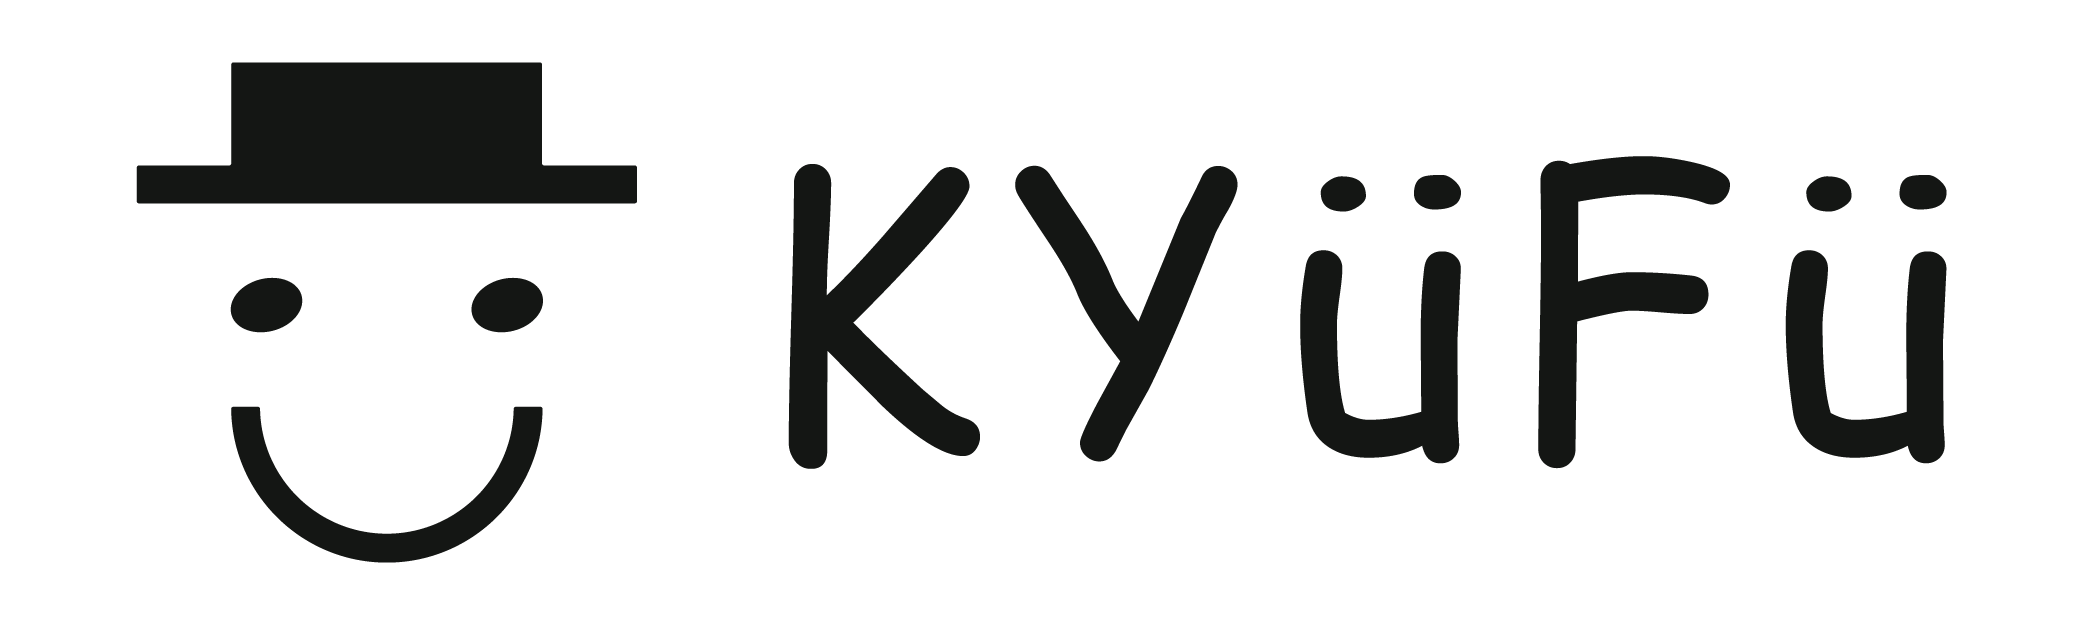 株式会社KyuFu